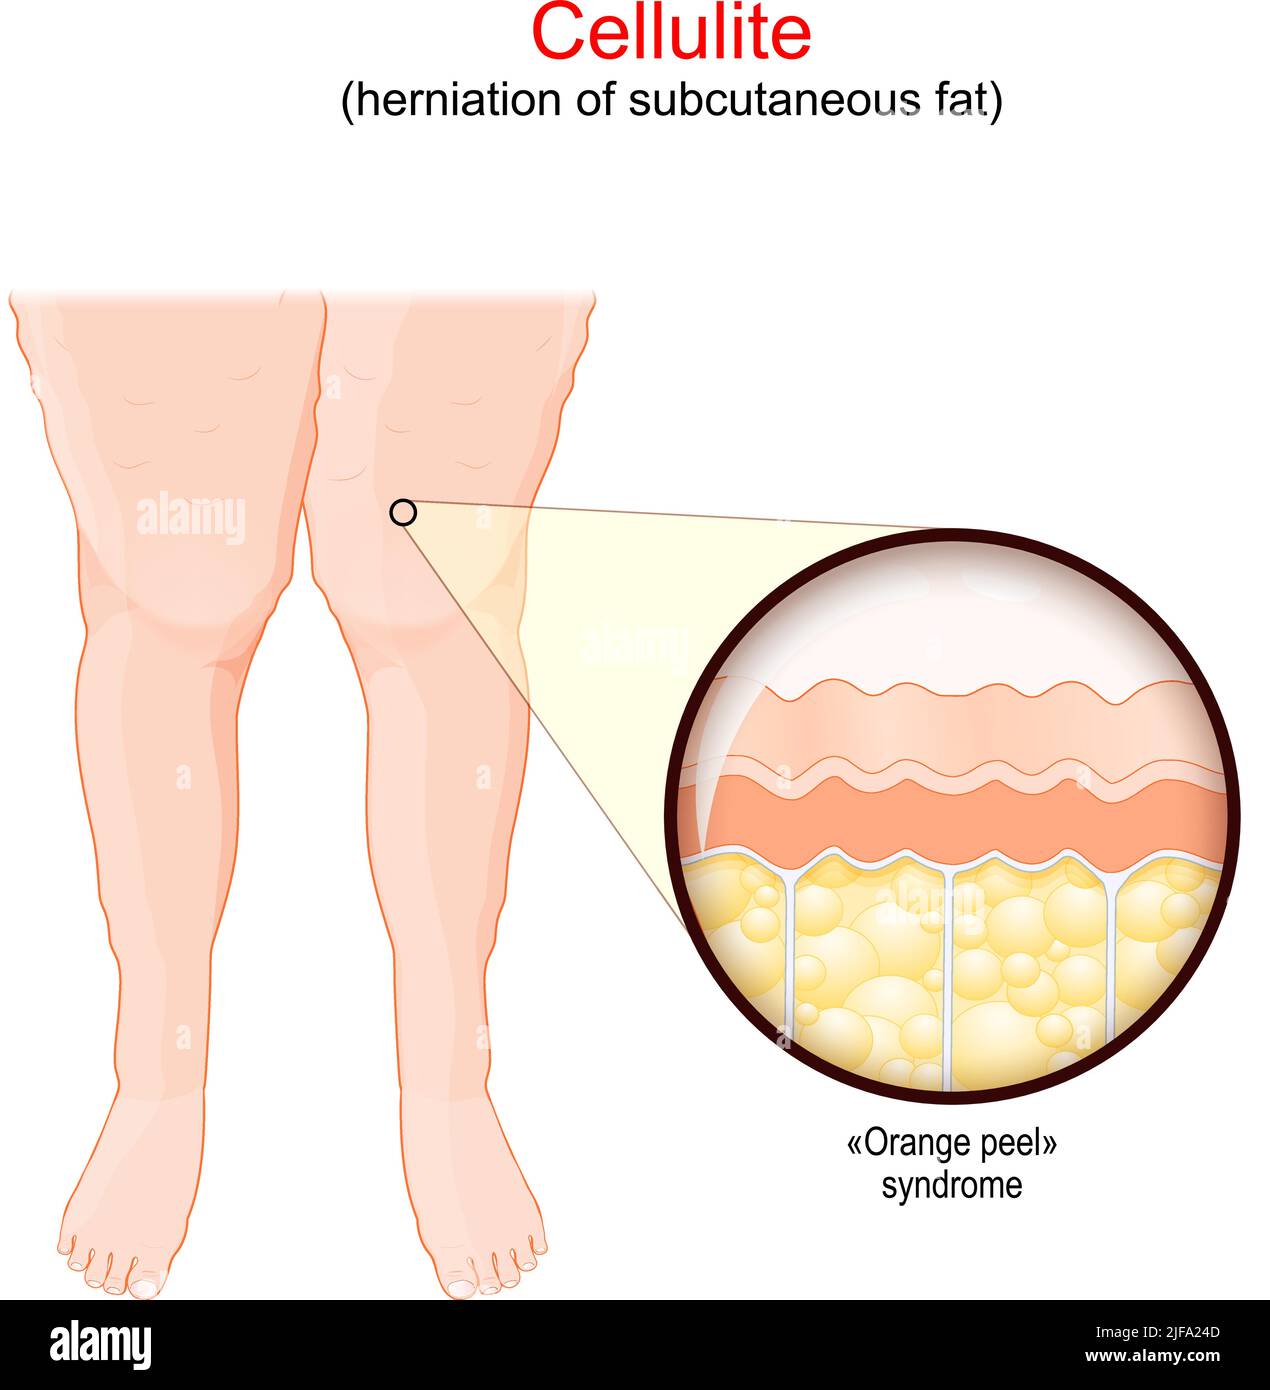 Cellulite. Femmine gambe con adiposis edematosa. Primo piano di una pelle umana con sindrome da buccia d'arancia. Herniation di grasso sottocutaneo. Vettore Illustrazione Vettoriale